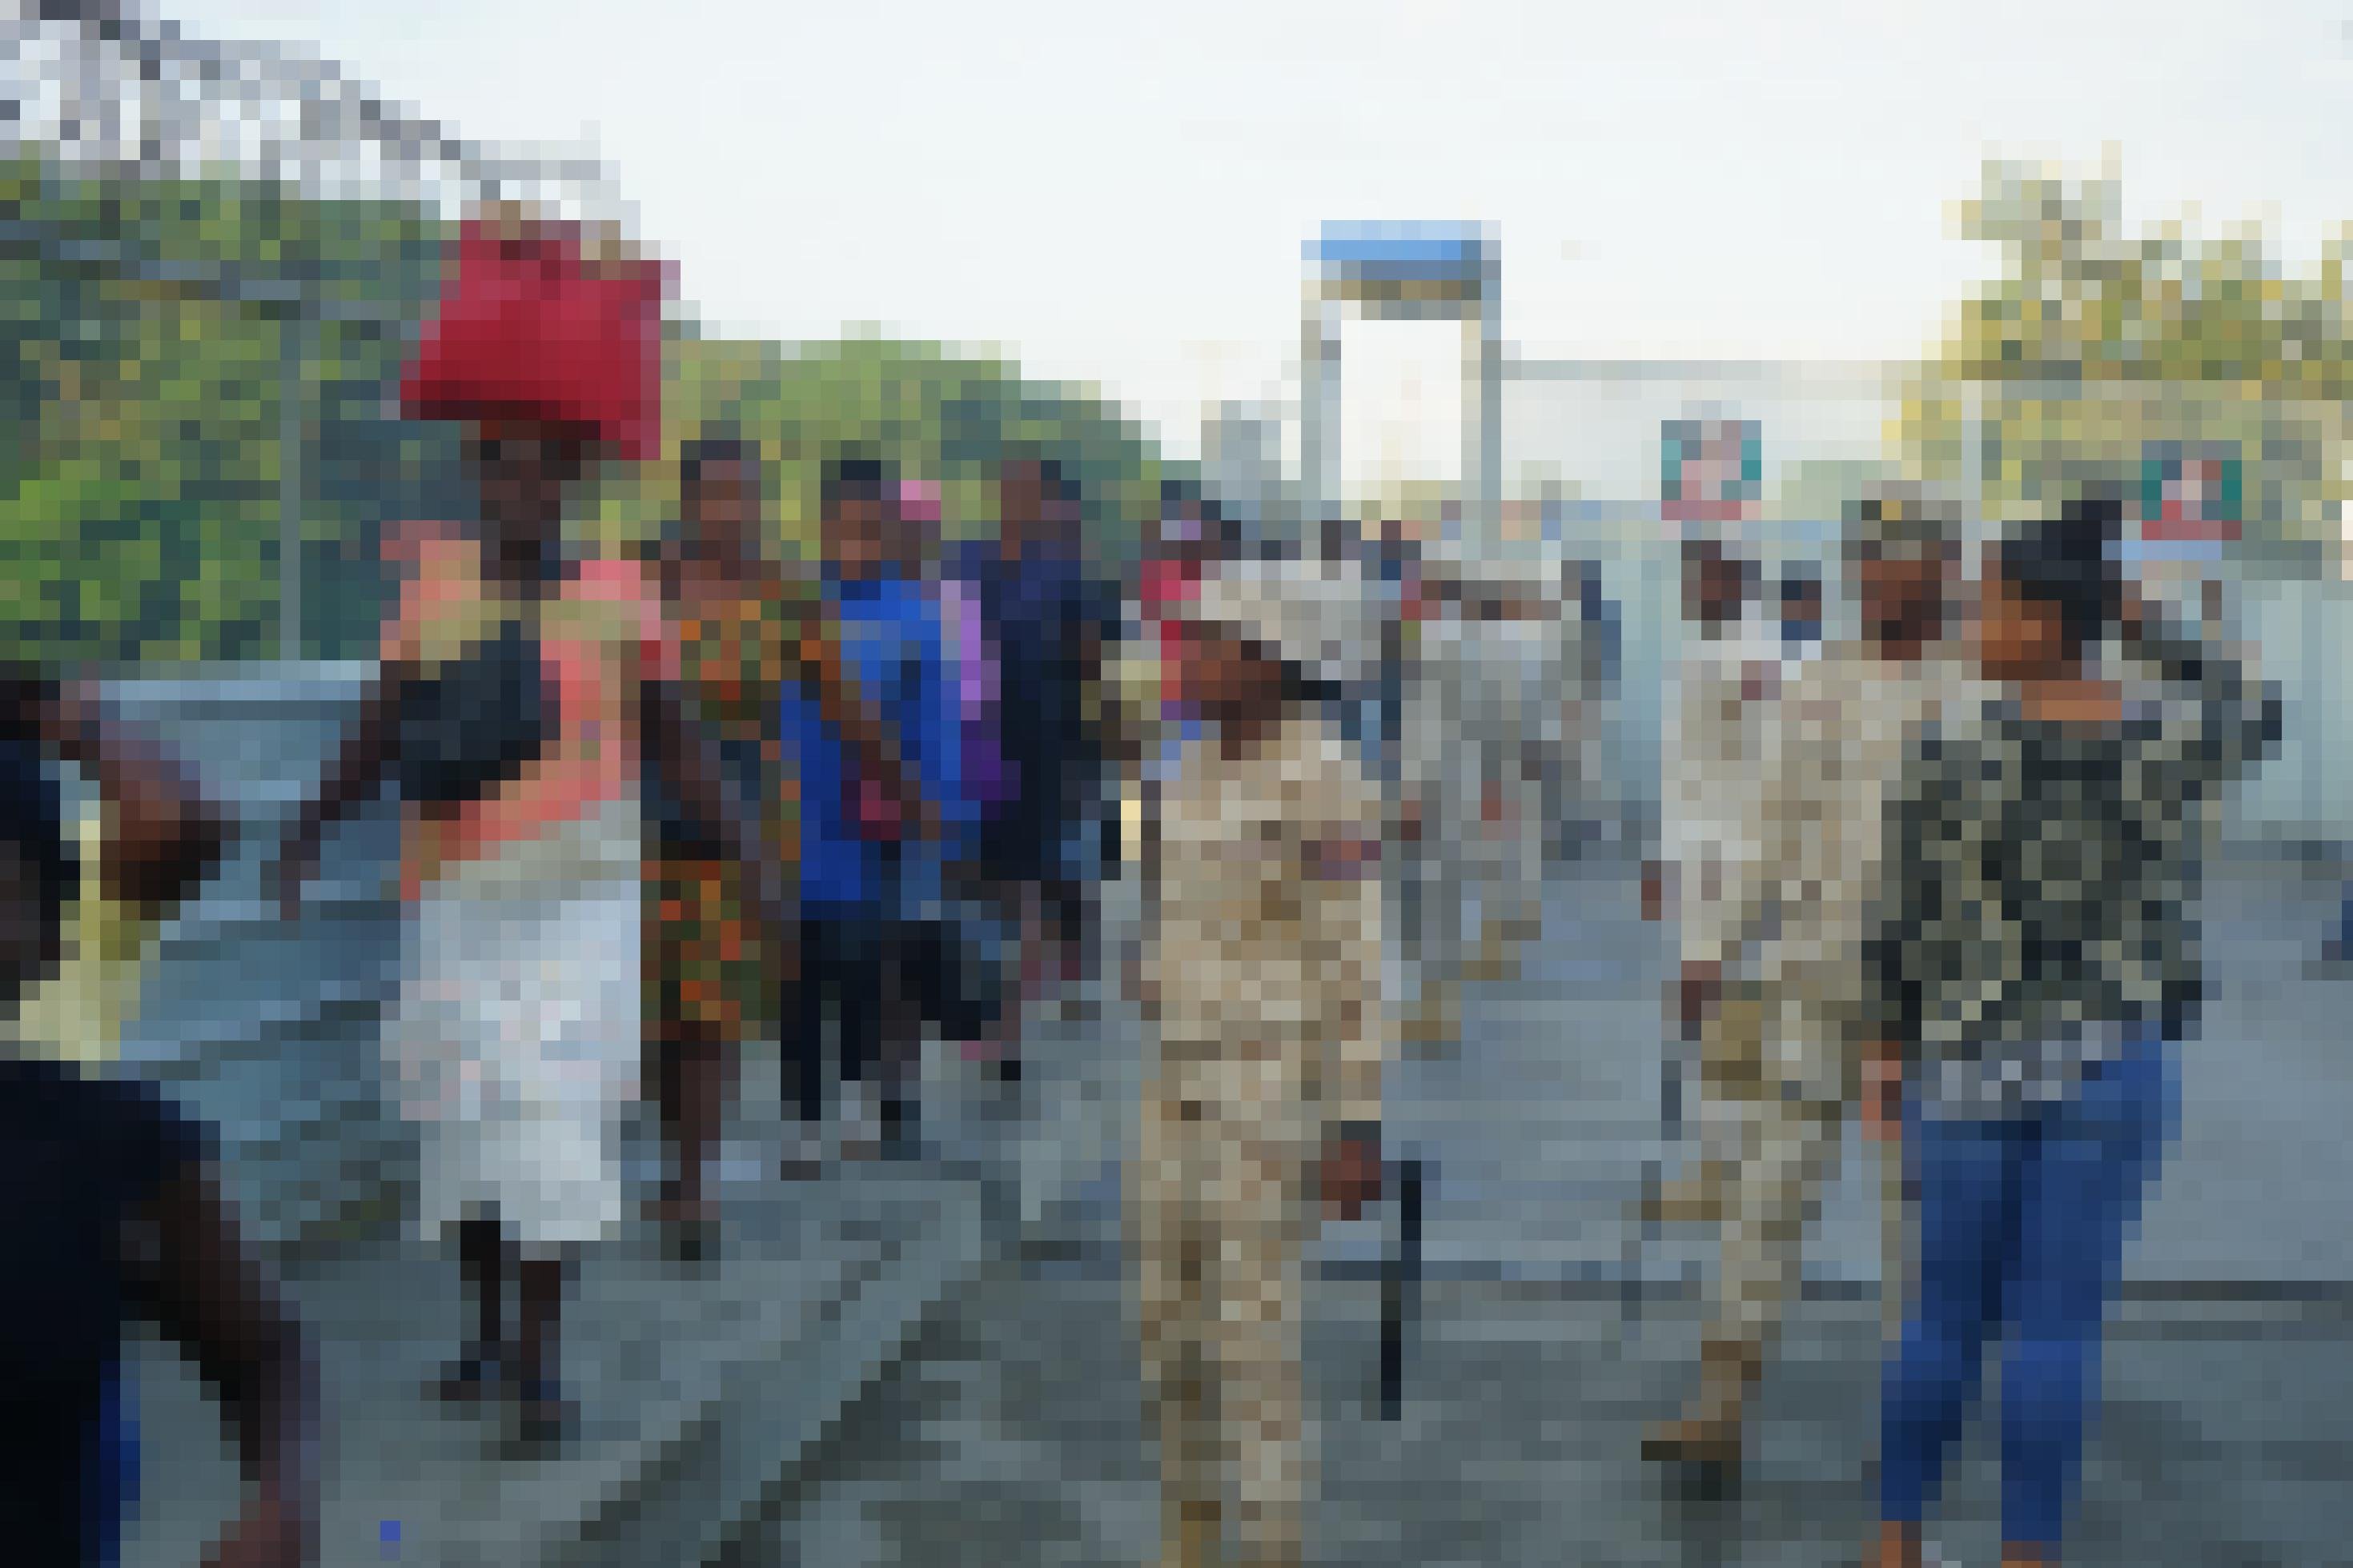 Grenzschützer in hellen Uniformen überwachen die haitianischen Tagesmigranten, die im Gänsemarsch über die Grenzbrücke kommen.